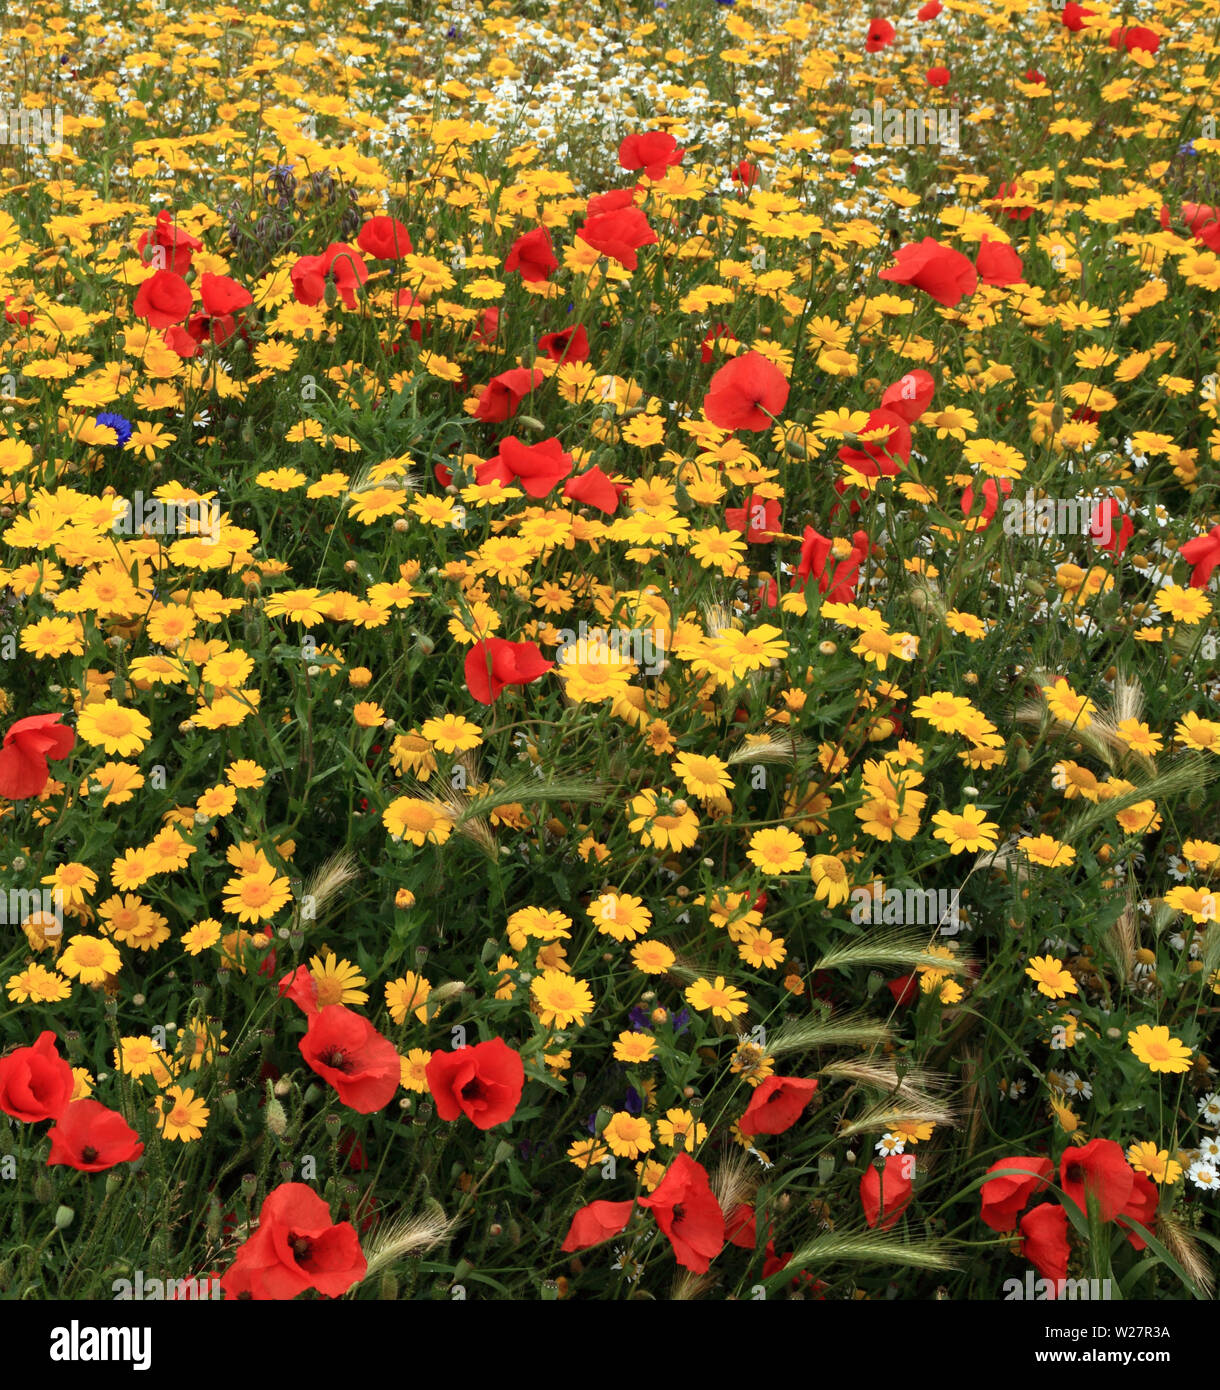 Jardin de fleurs sauvages, champ coquelicot, coquelicot, bleuet, marigold maïs, coloré Banque D'Images